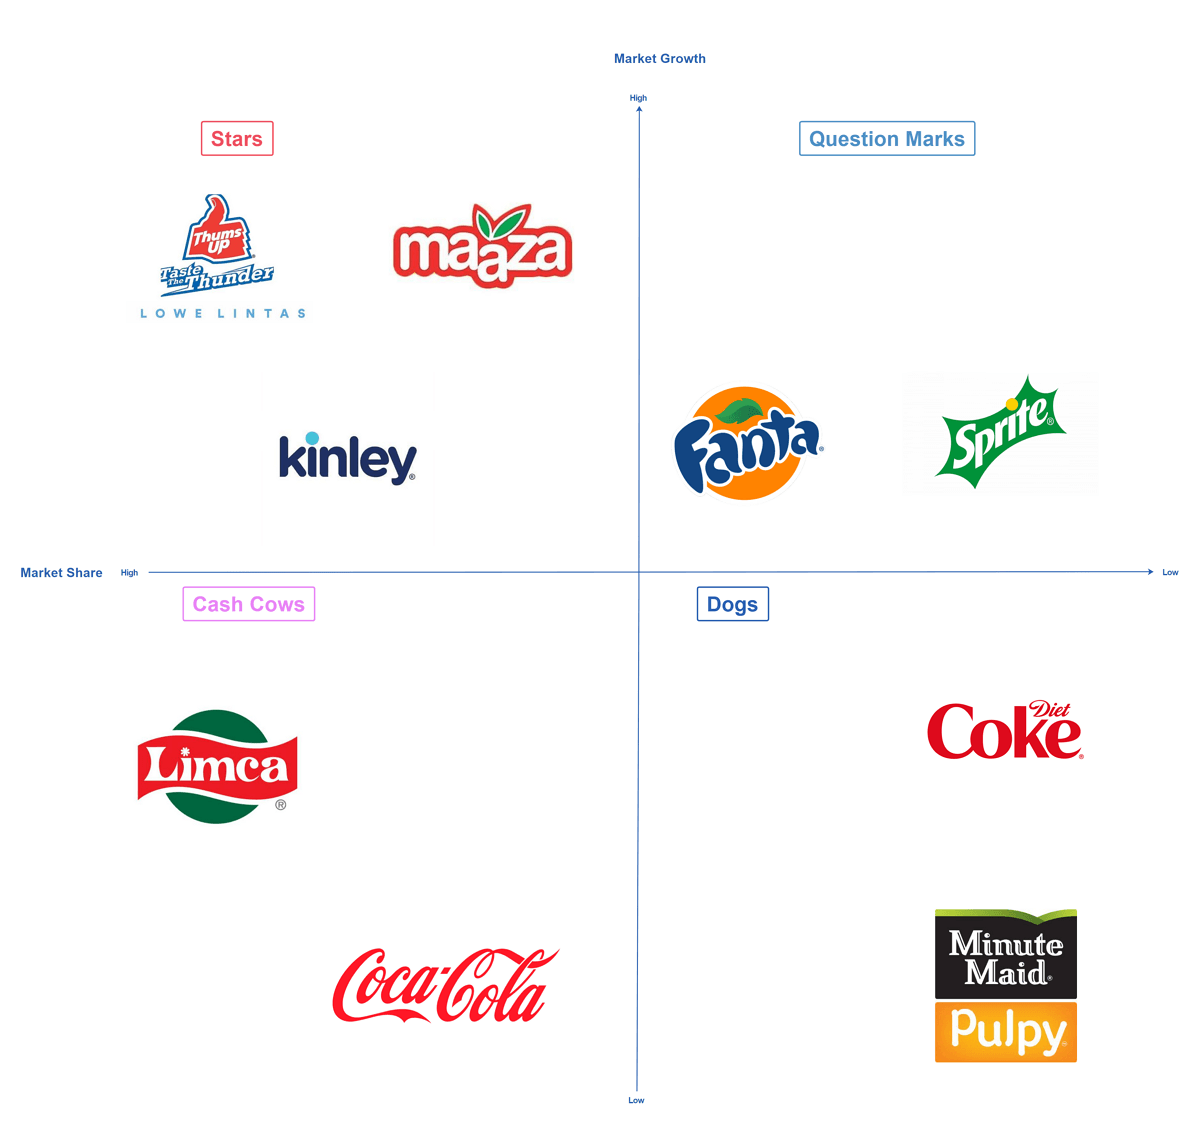 BCG Matrix of Coca-Cola.png